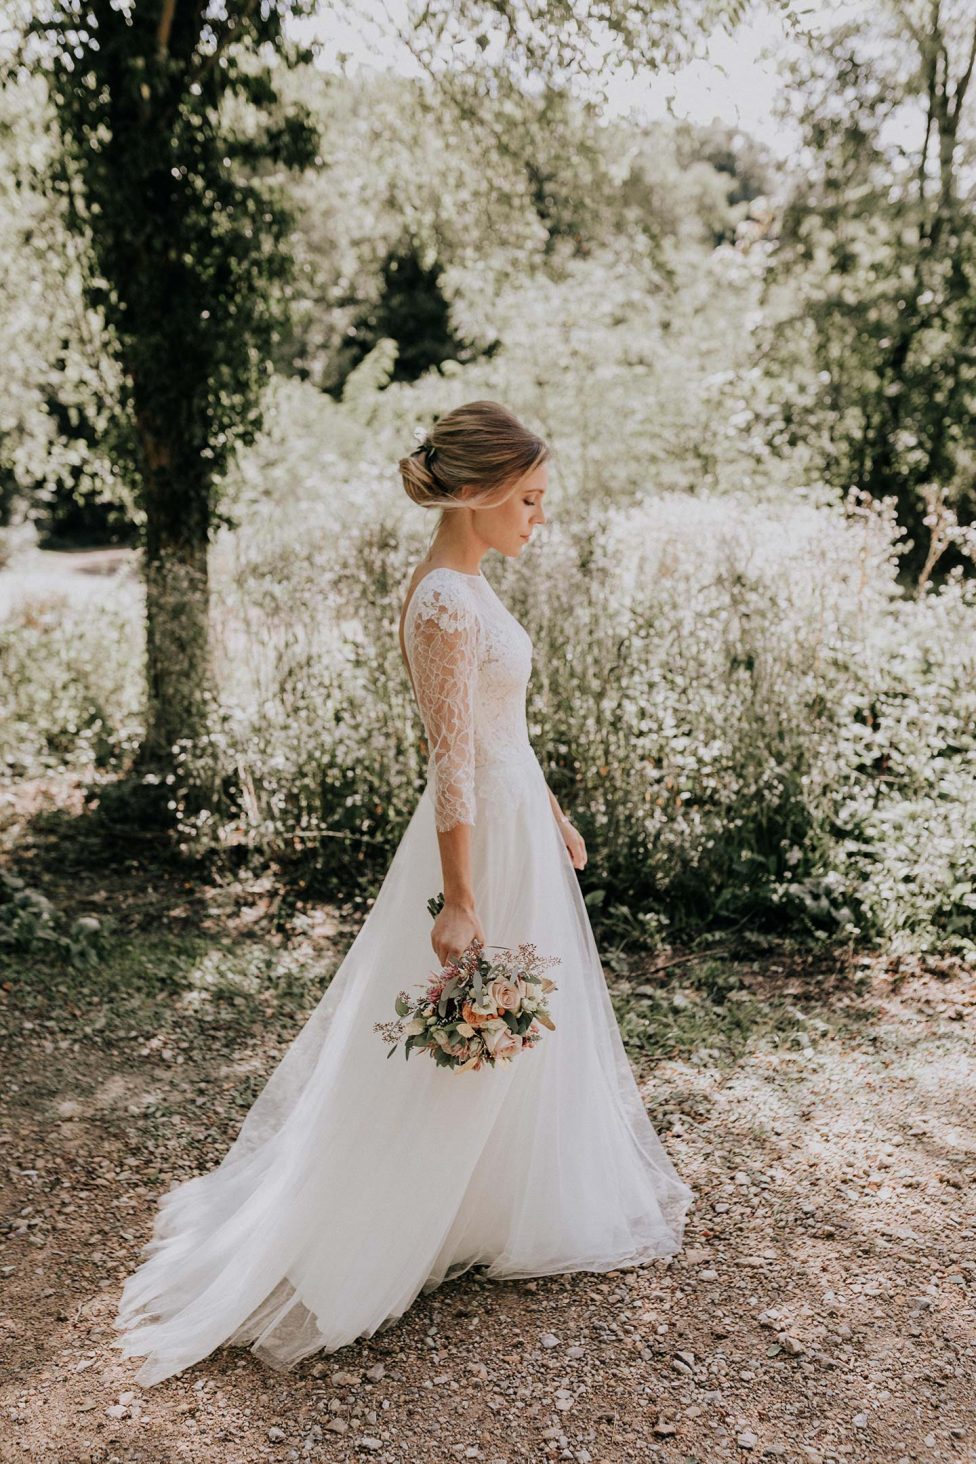 Hochzeitswahn - Eine Braut in einem eleganten Brautkleid mit Spitzenärmeln hält einen Blumenstrauß in der Hand, ihre Haare sind hochgesteckt, während sie nachdenklich im Freien spazieren geht, während das gesprenkelte Sonnenlicht durch die Bäume fällt.